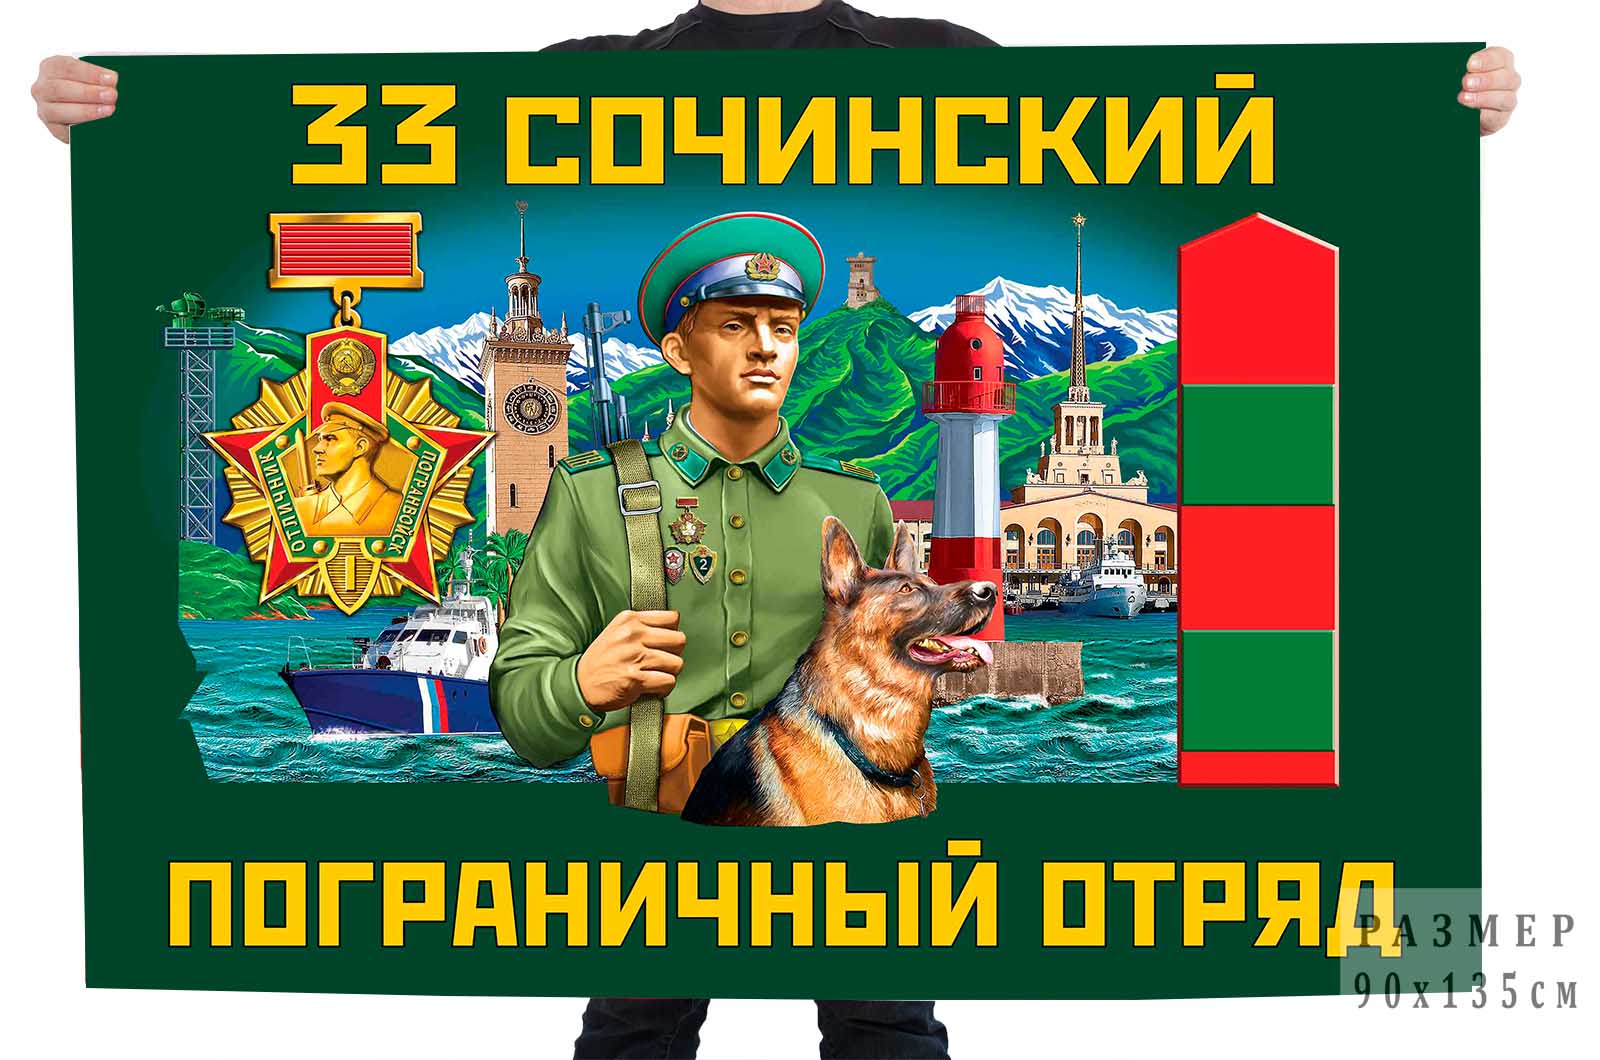 Флаг 33 Сочинского пограничного отряда